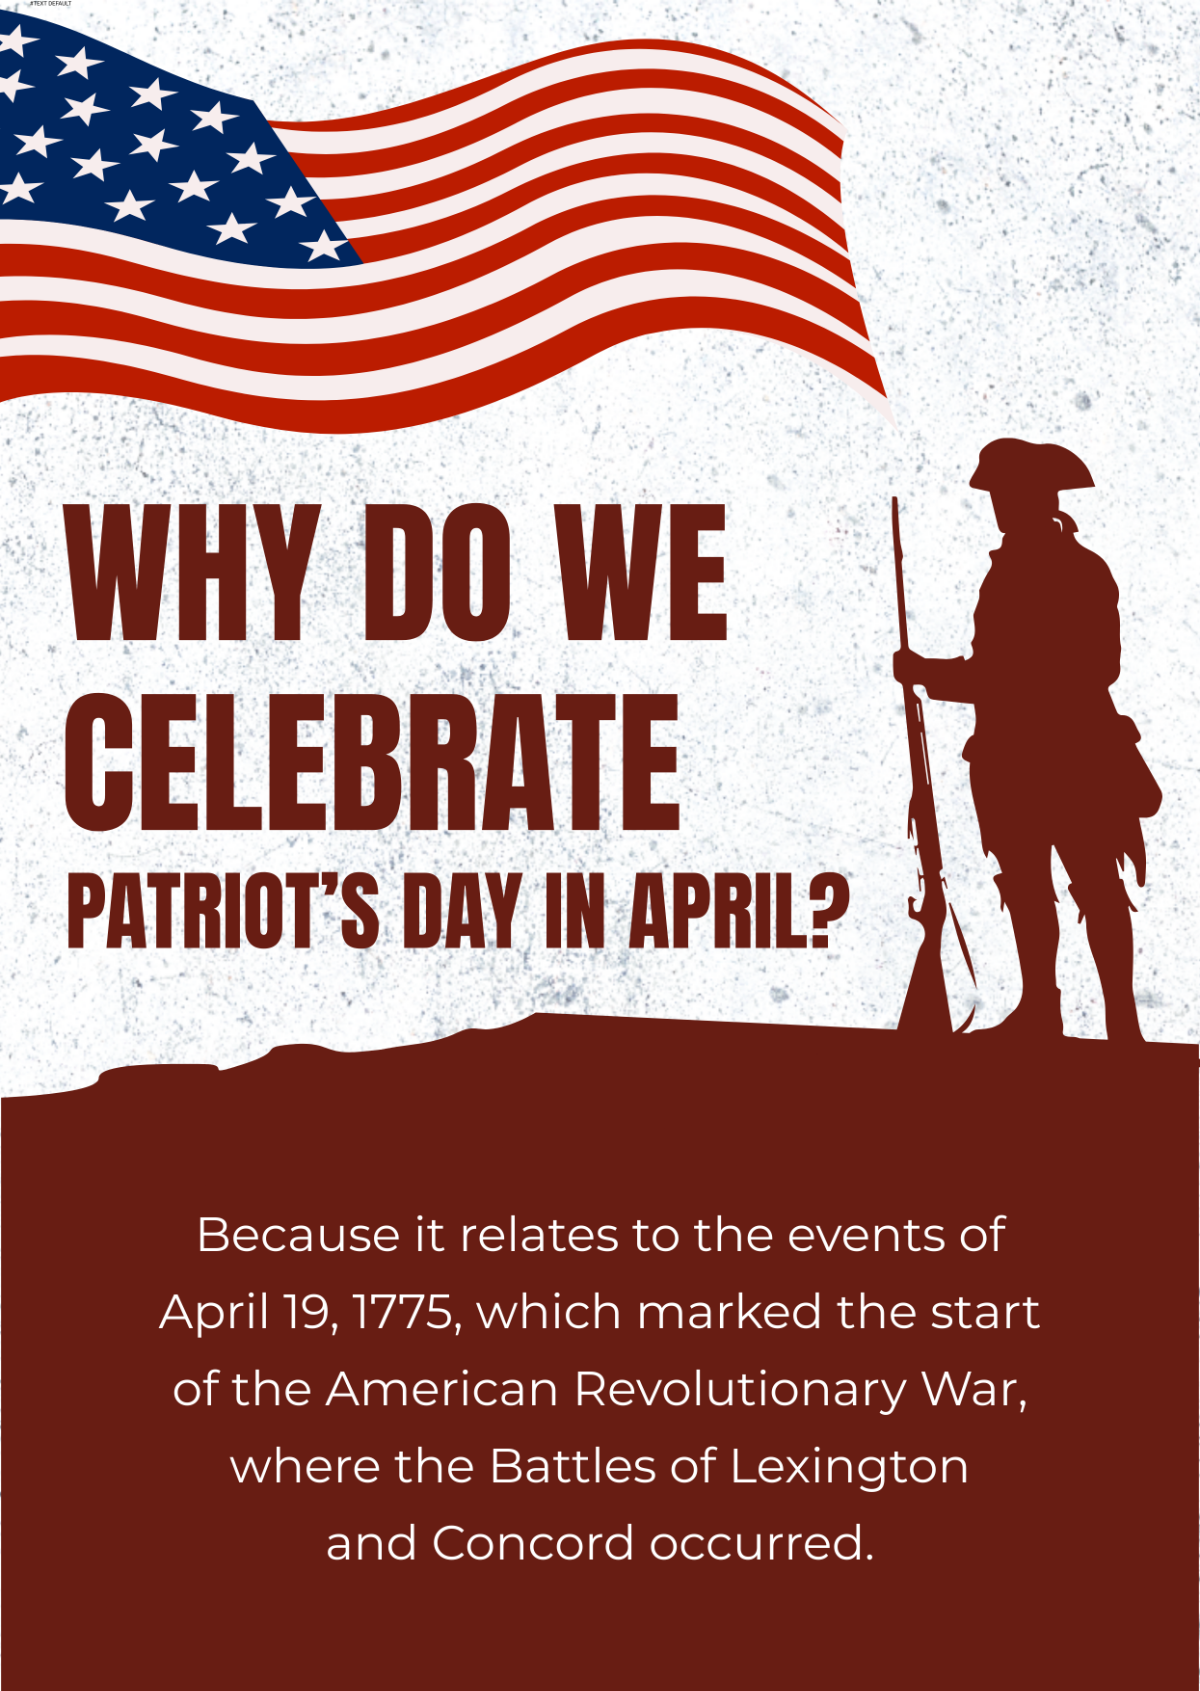 Why do we celebrate Patriot's Day in April?